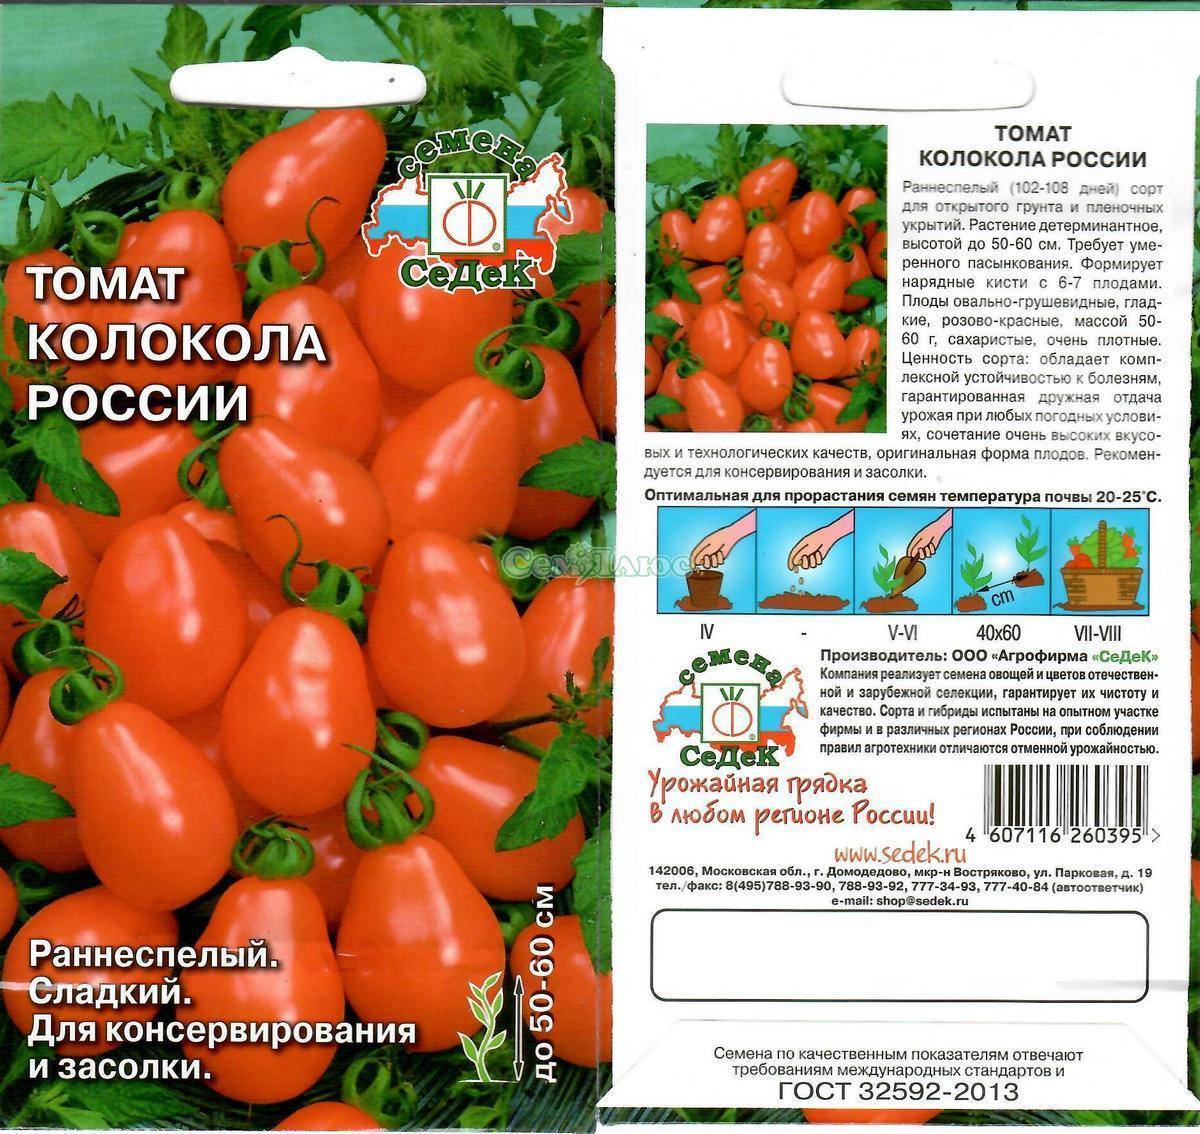 Томат колокола россии: характеристика и описание сорта, урожайность с фото